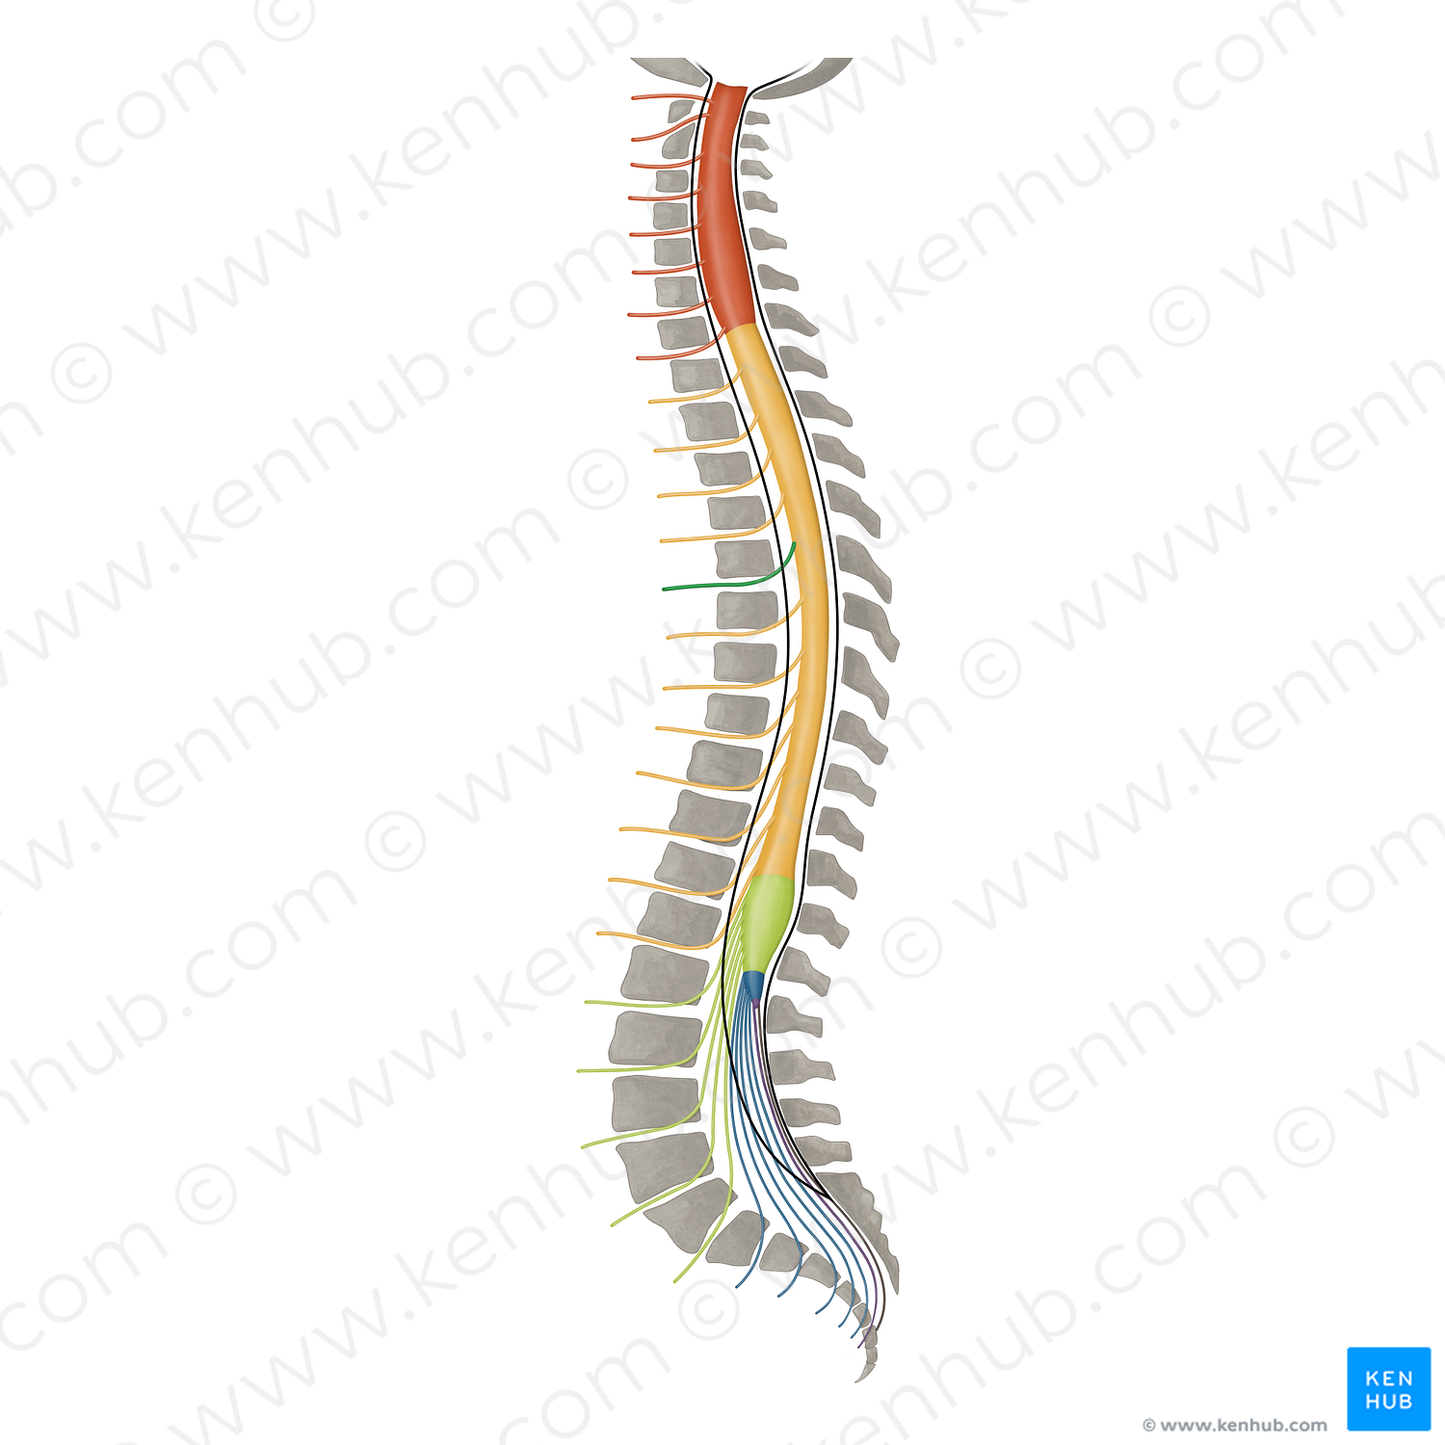 Spinal nerve T5 (#16427)